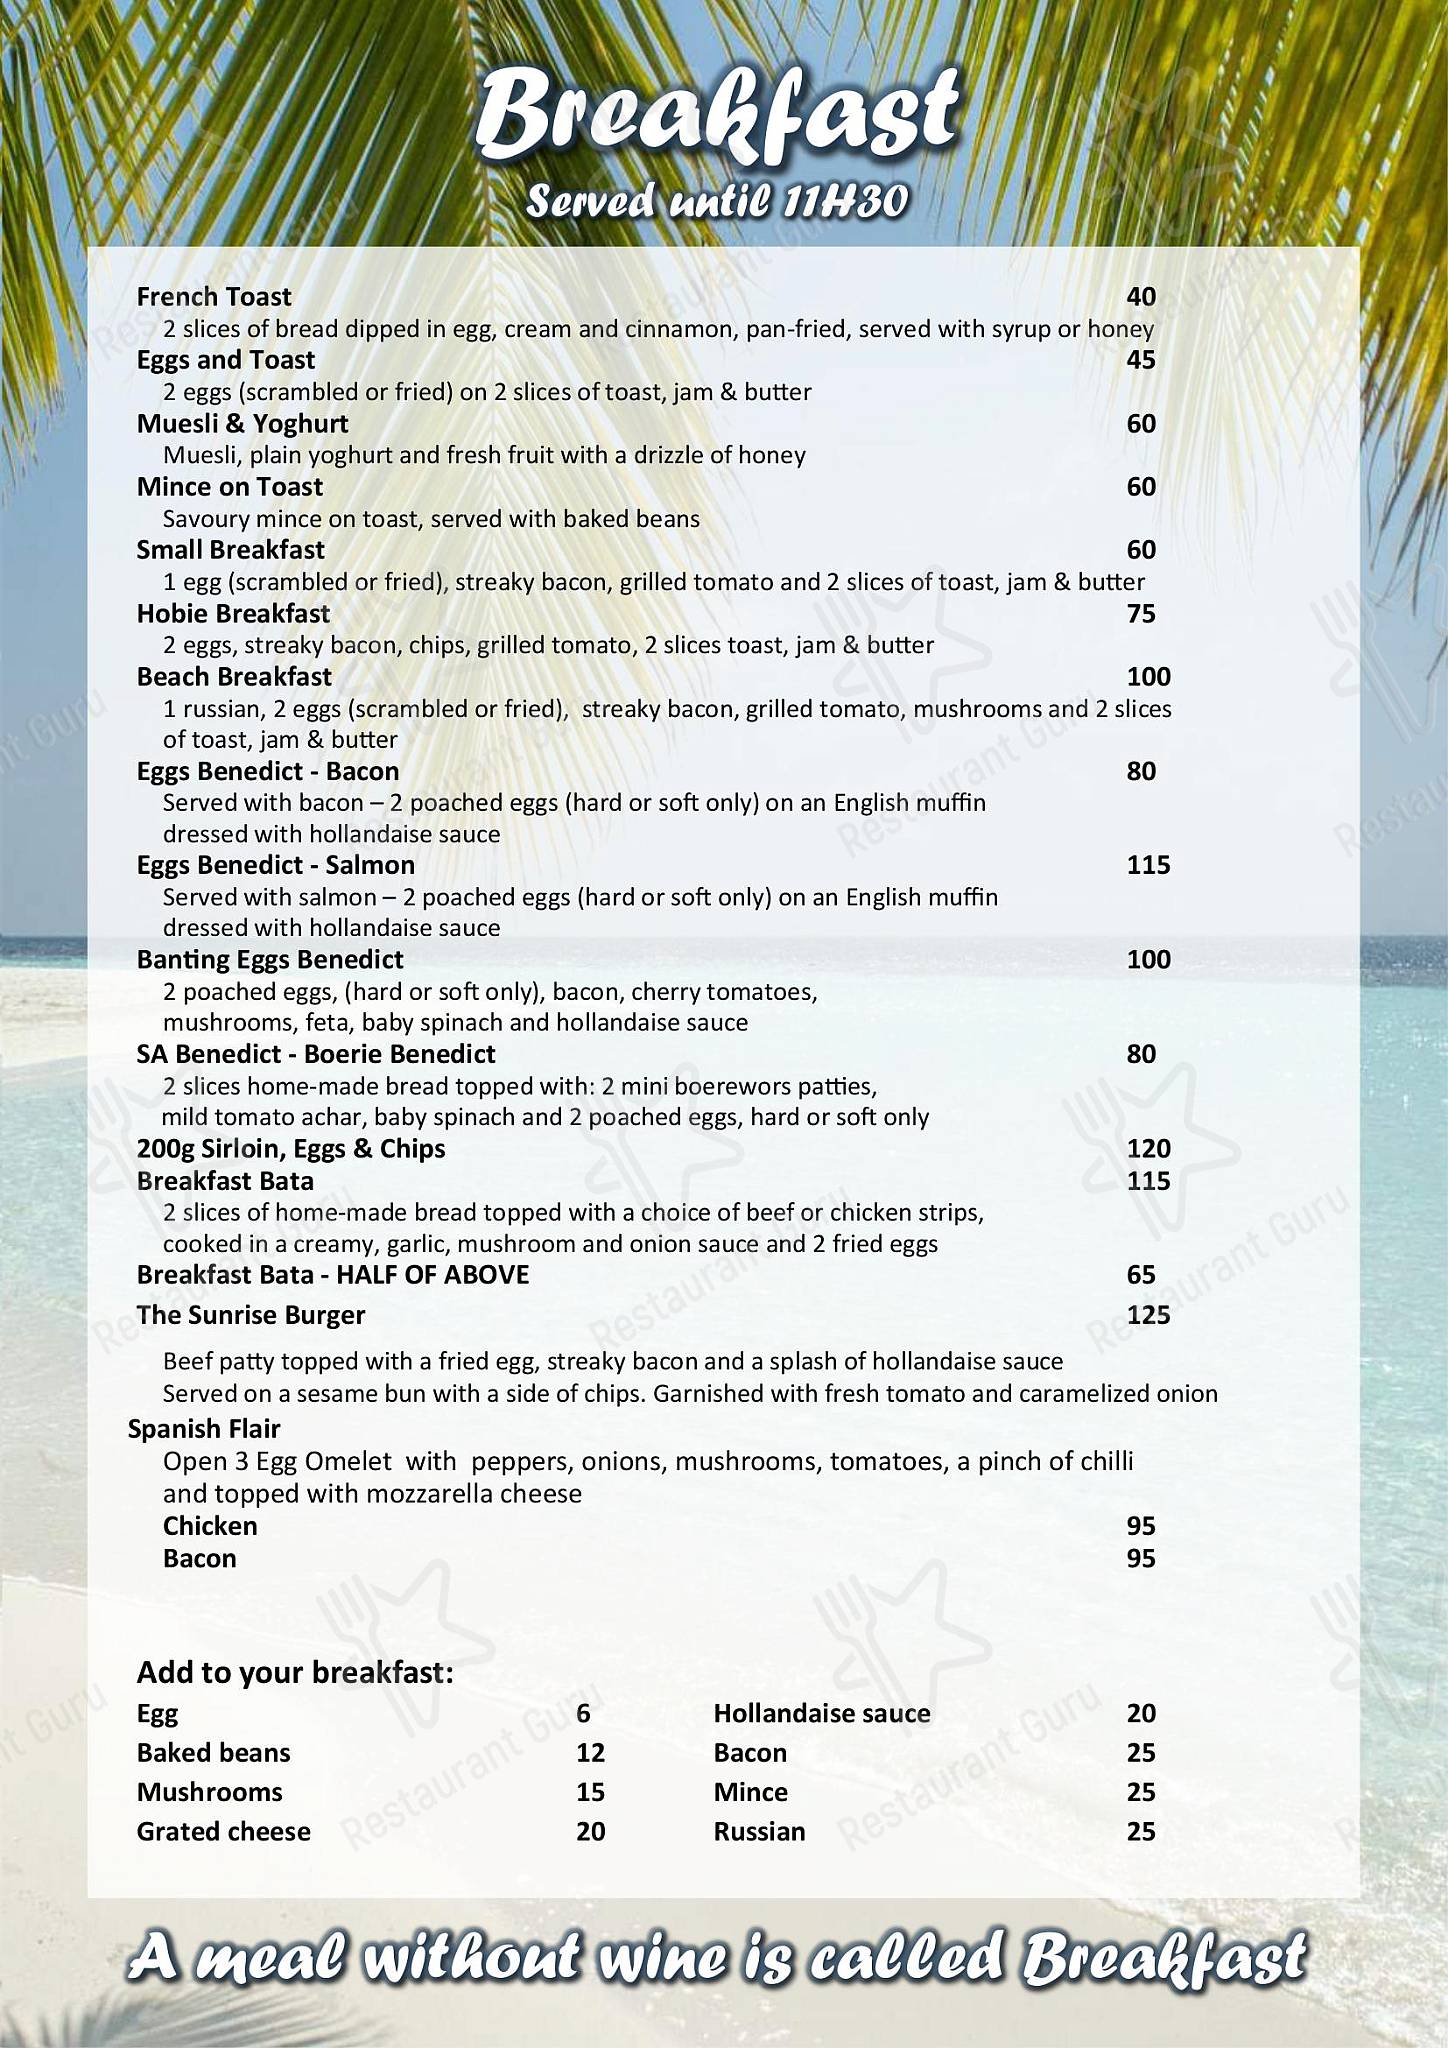 langebaan yacht club menu pdf